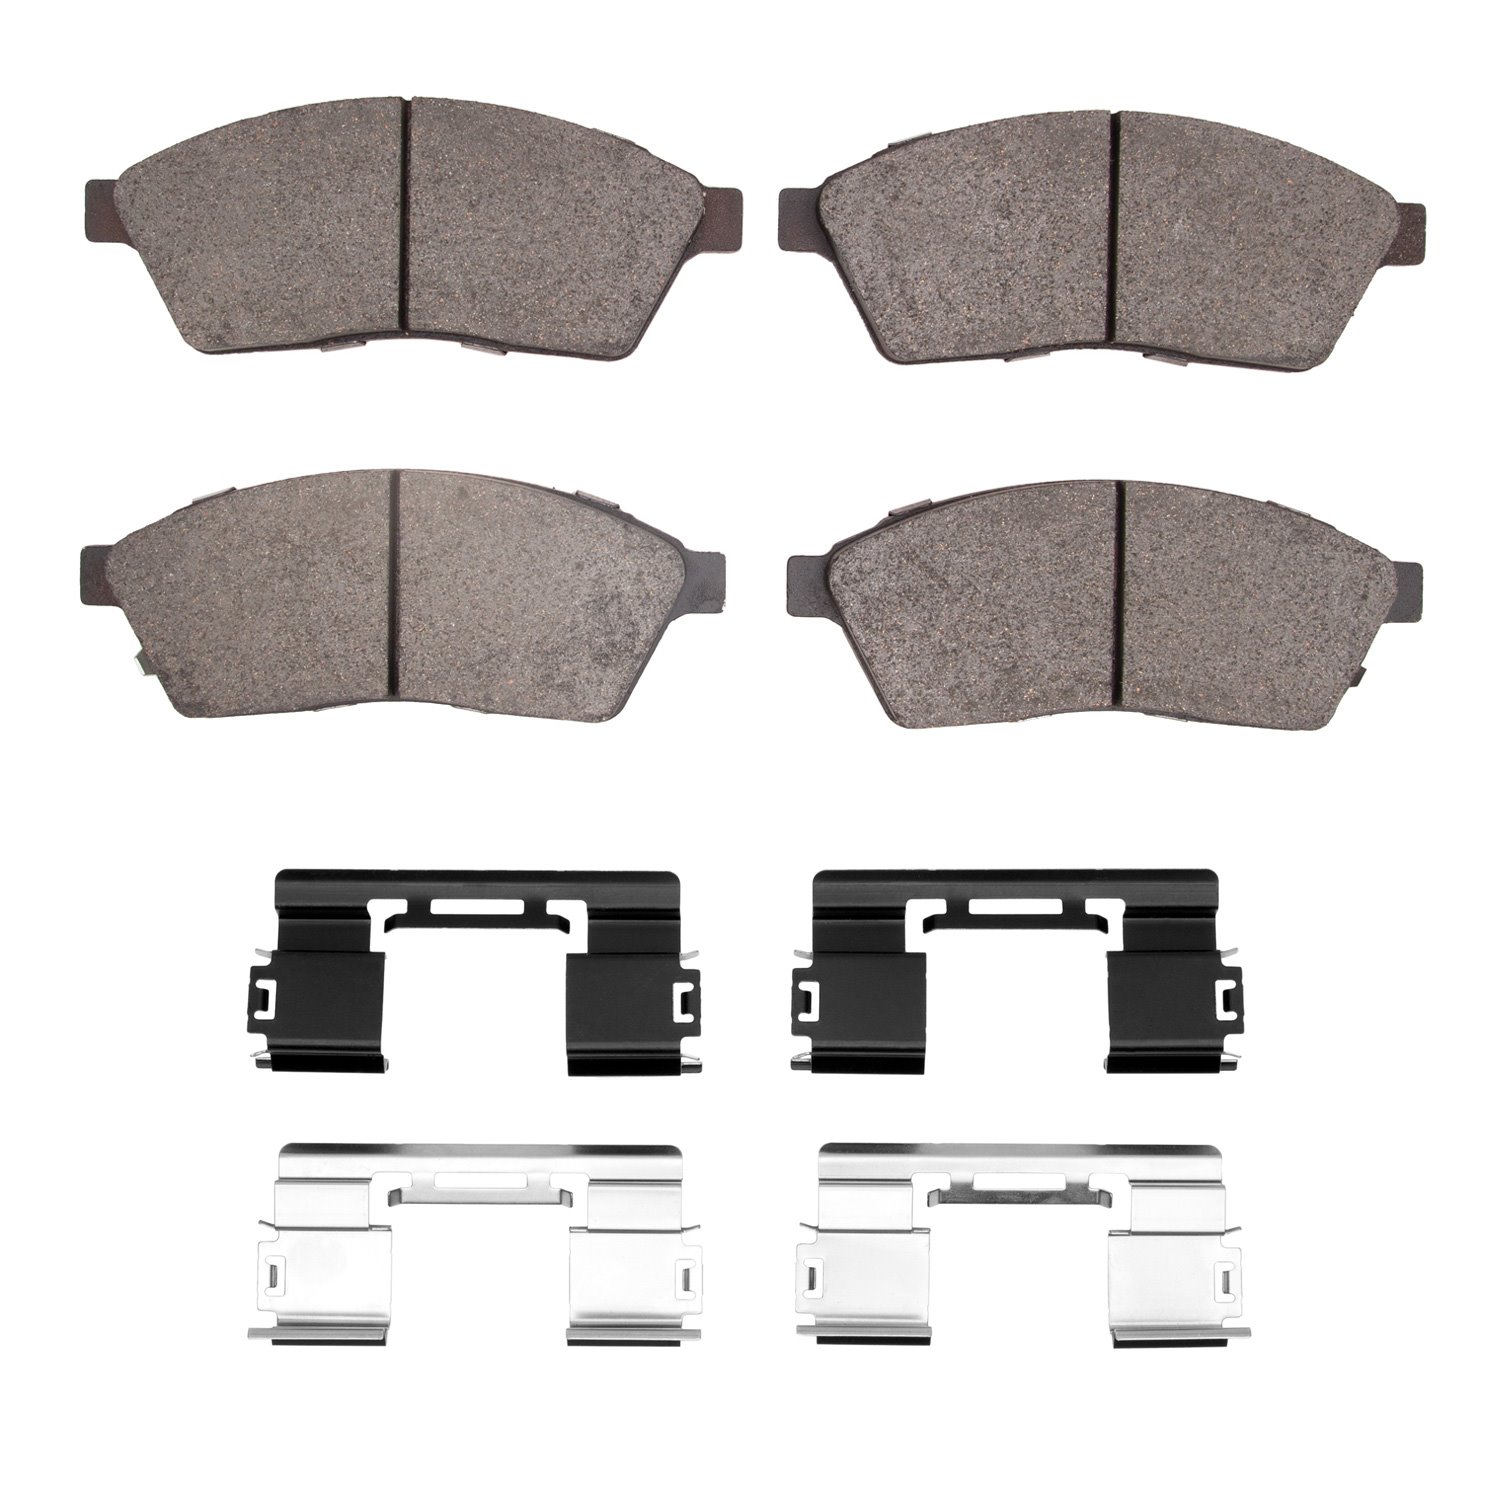 1551-1422-01 5000 Advanced Low-Metallic Brake Pads & Hardware Kit, 2010-2016 GM, Position: Front